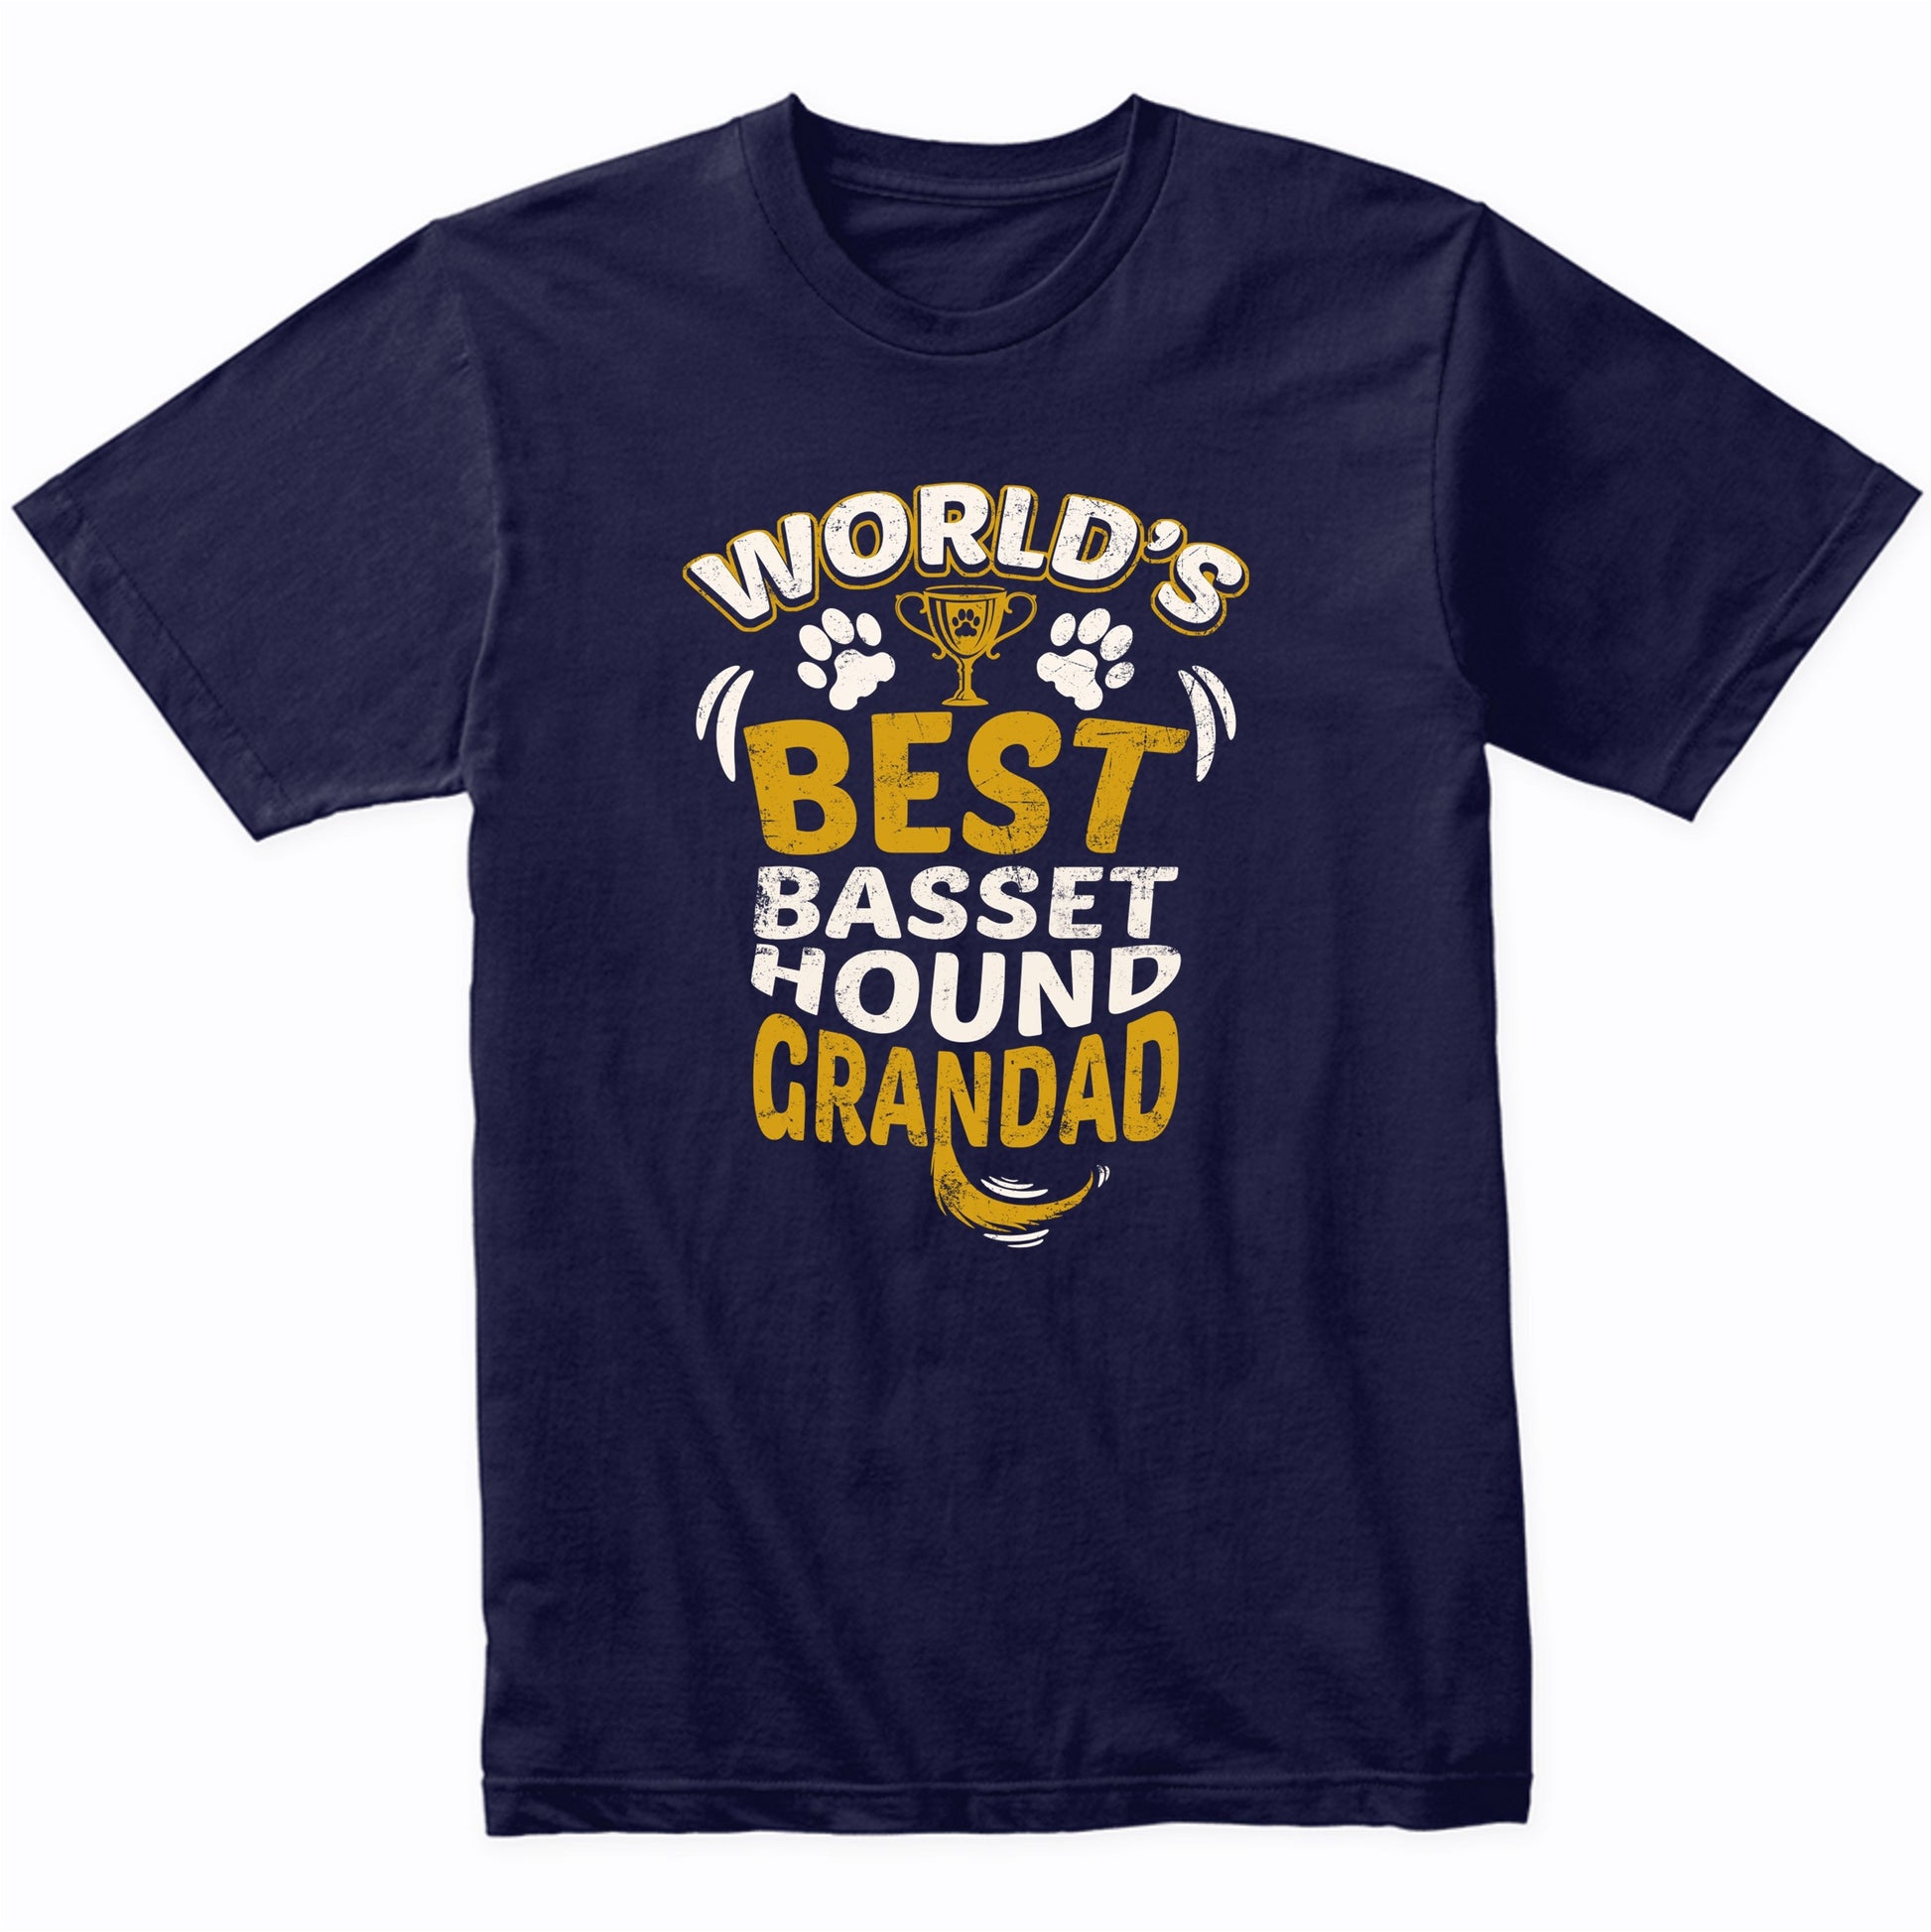 World's Best Basset Hound Grandad Graphic T-Shirt